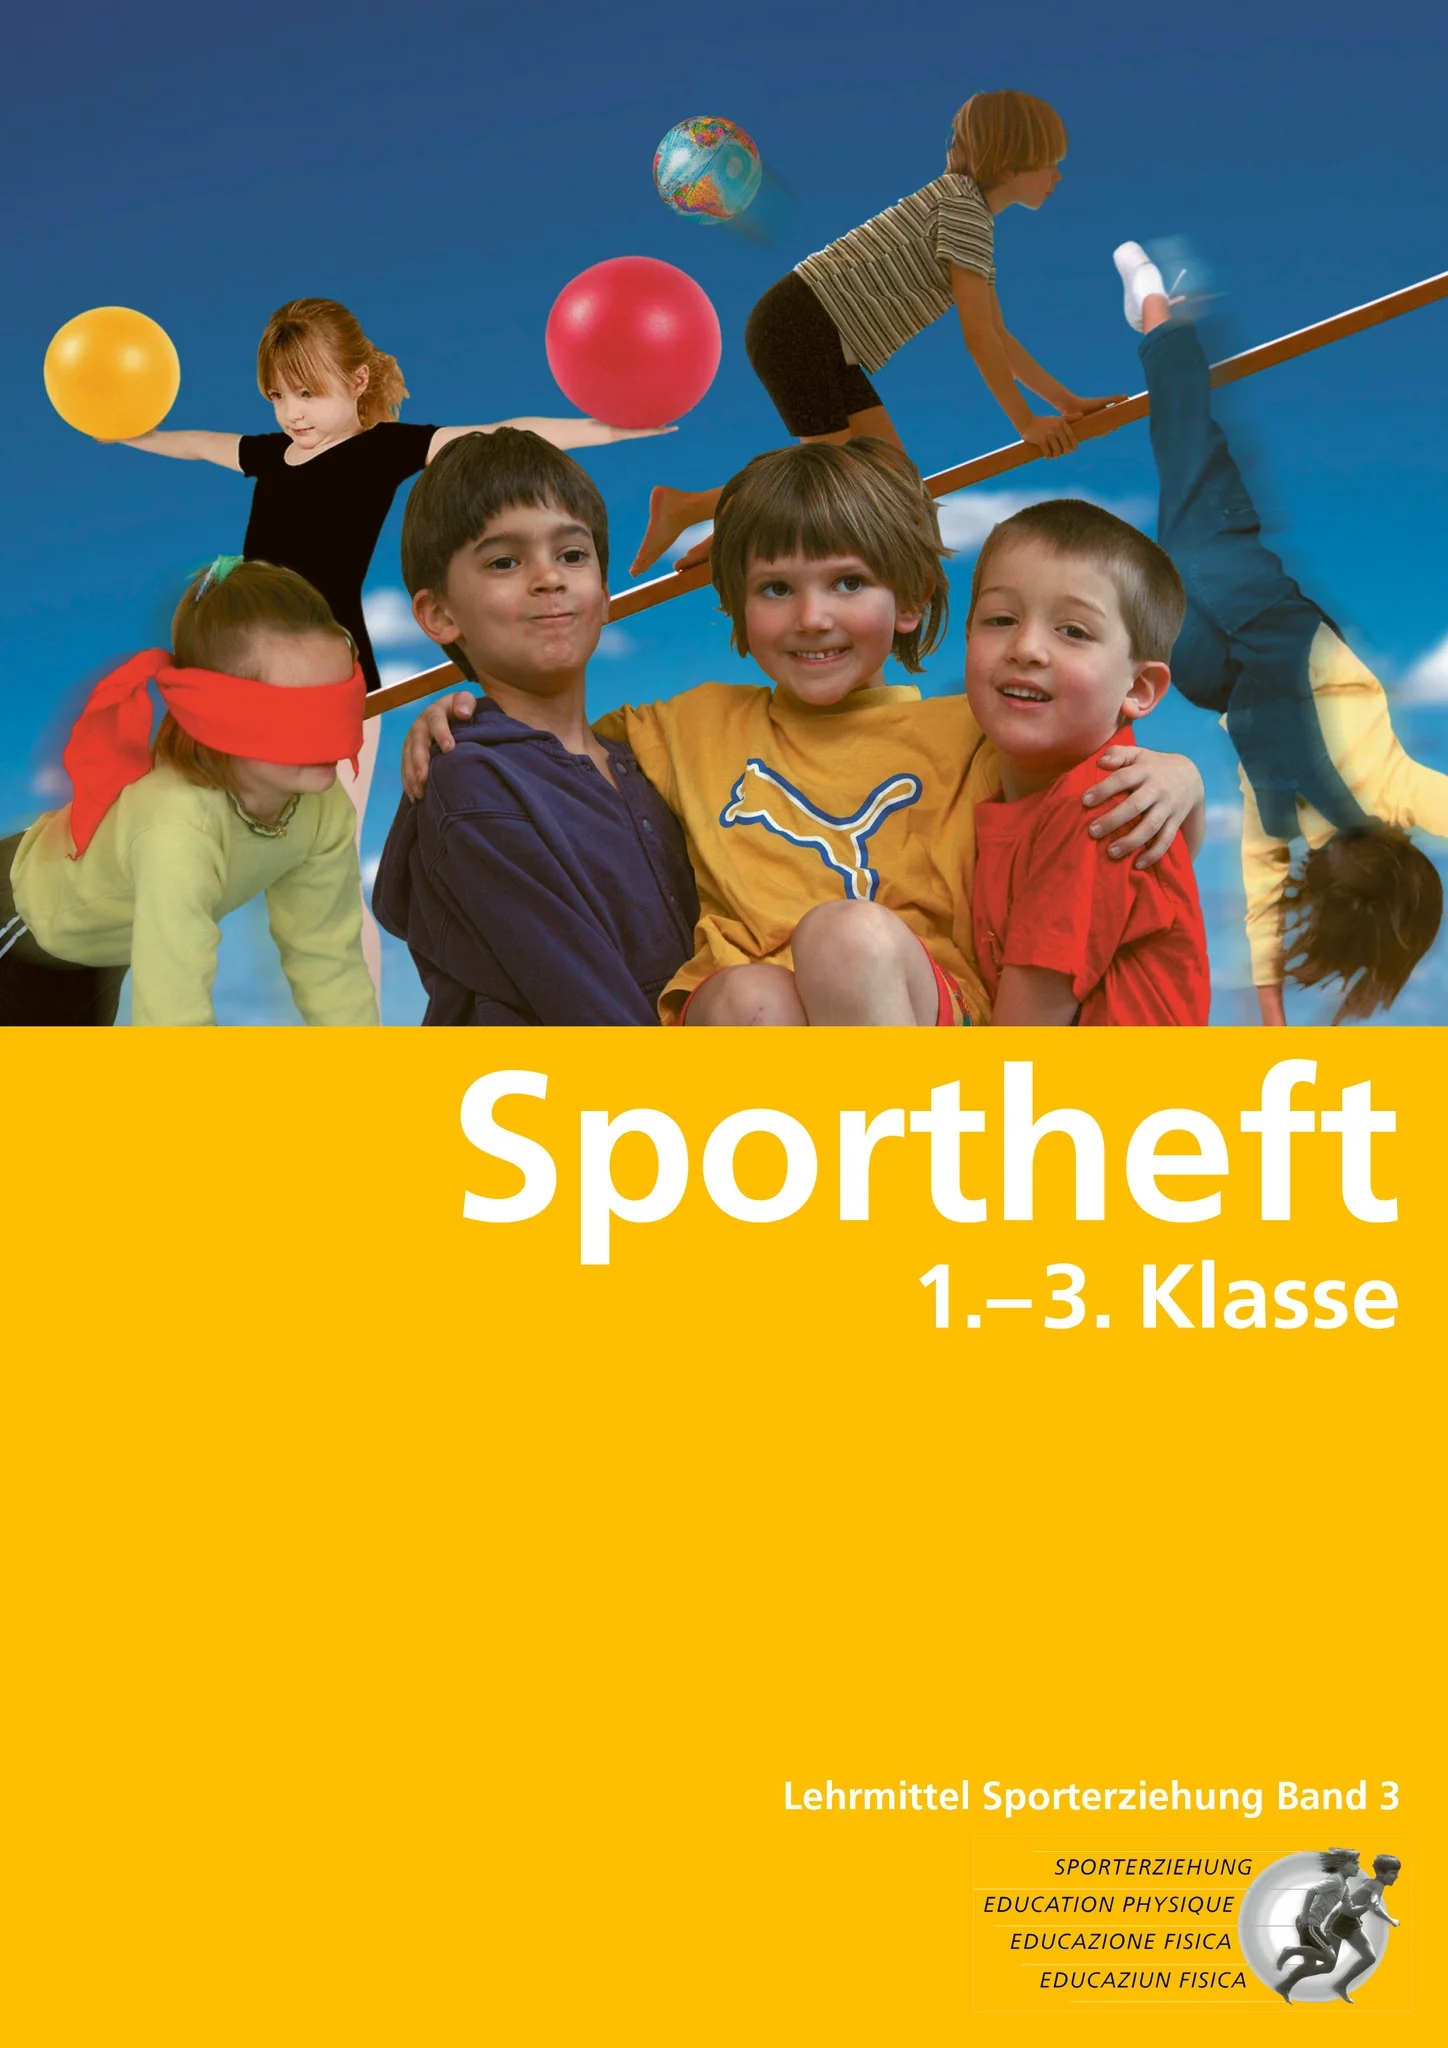 Sportheft Arbeitsheft für Schüler zu Sporterziehung Band 3, SPEZIALB.